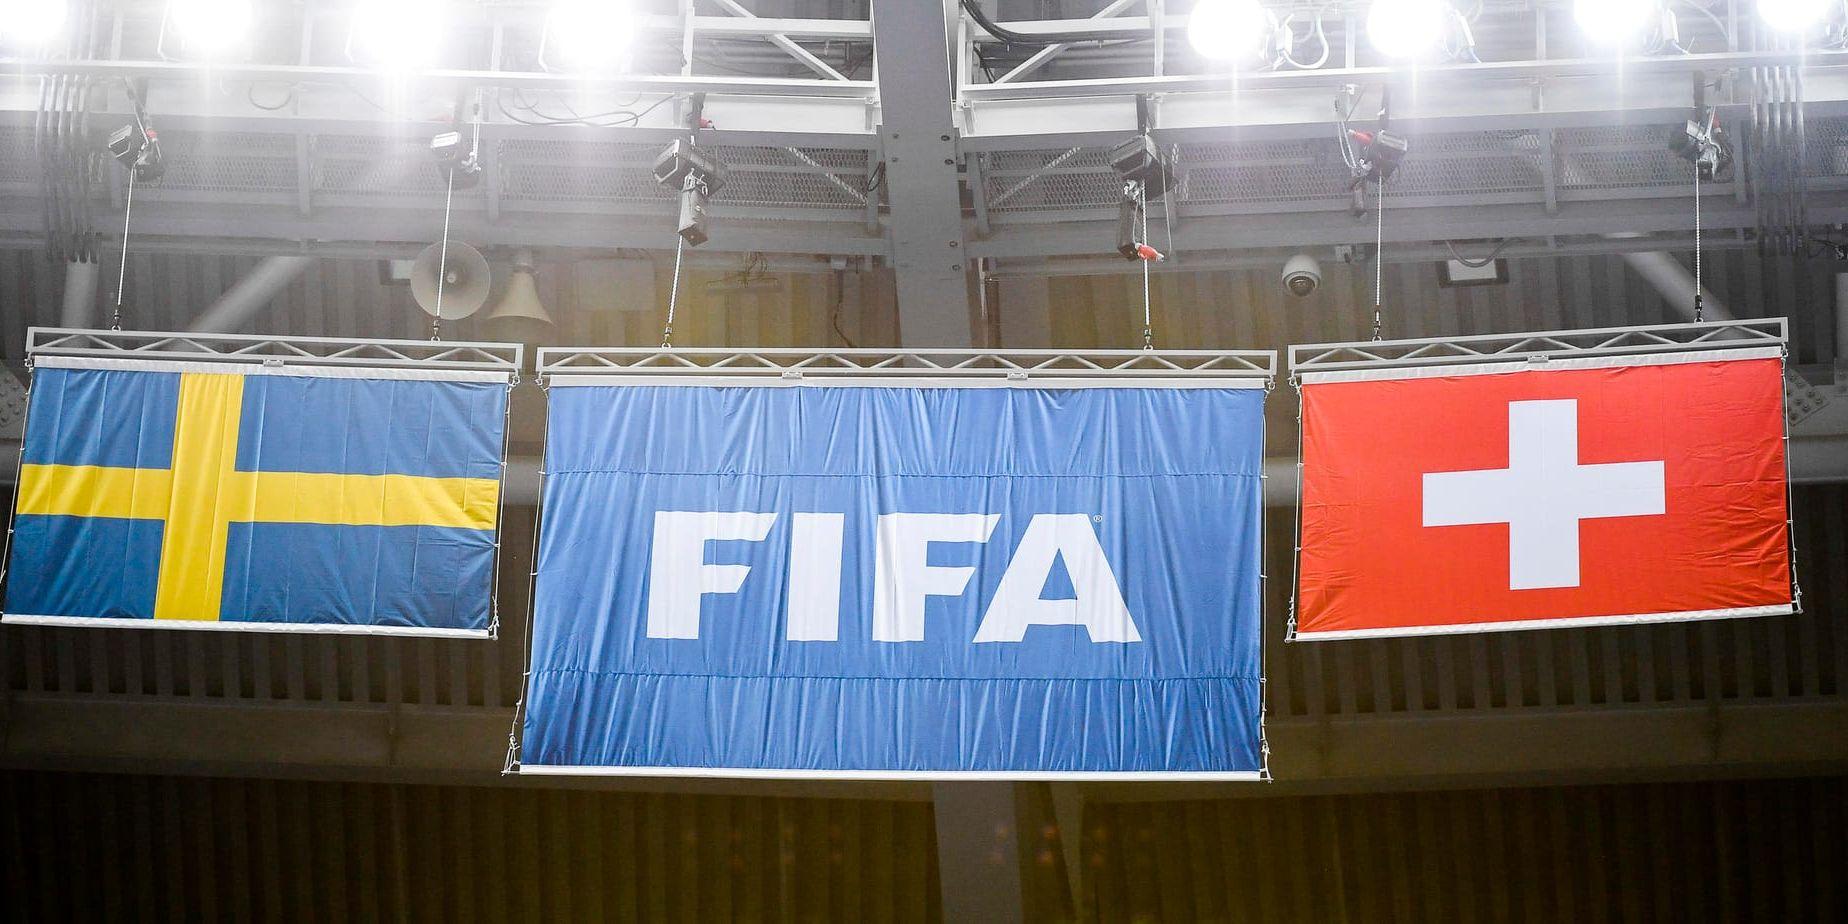 En fotbollstokig 13-åring rymde från sitt seglarläger för att kunna se Sveriges VM-match mot Schweiz.